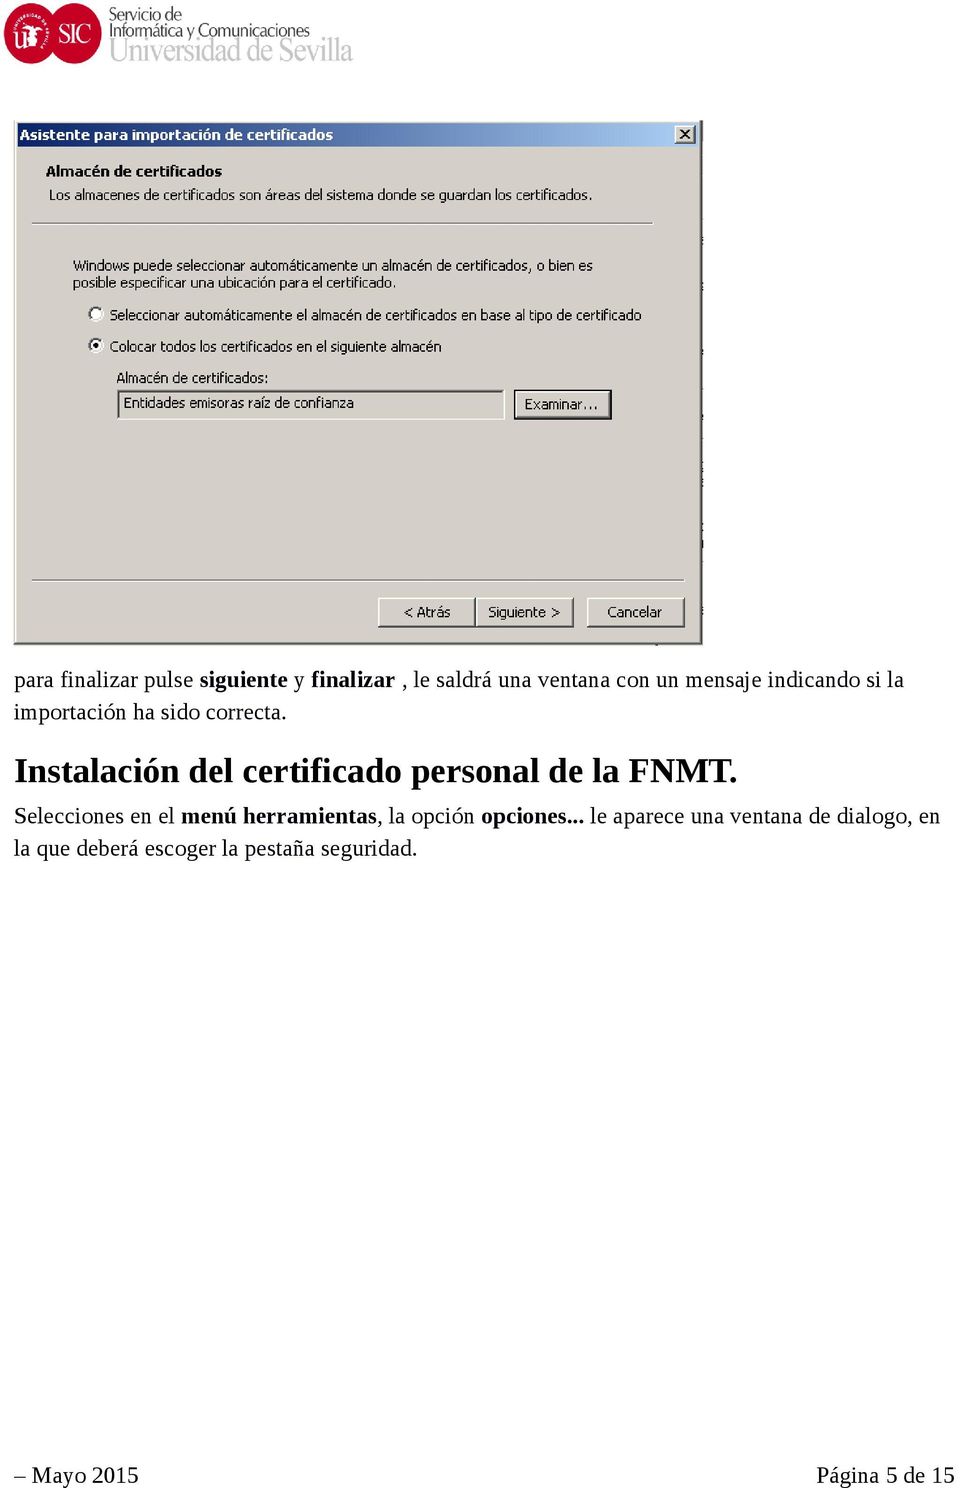 Instalación del certificado personal de la FNMT.